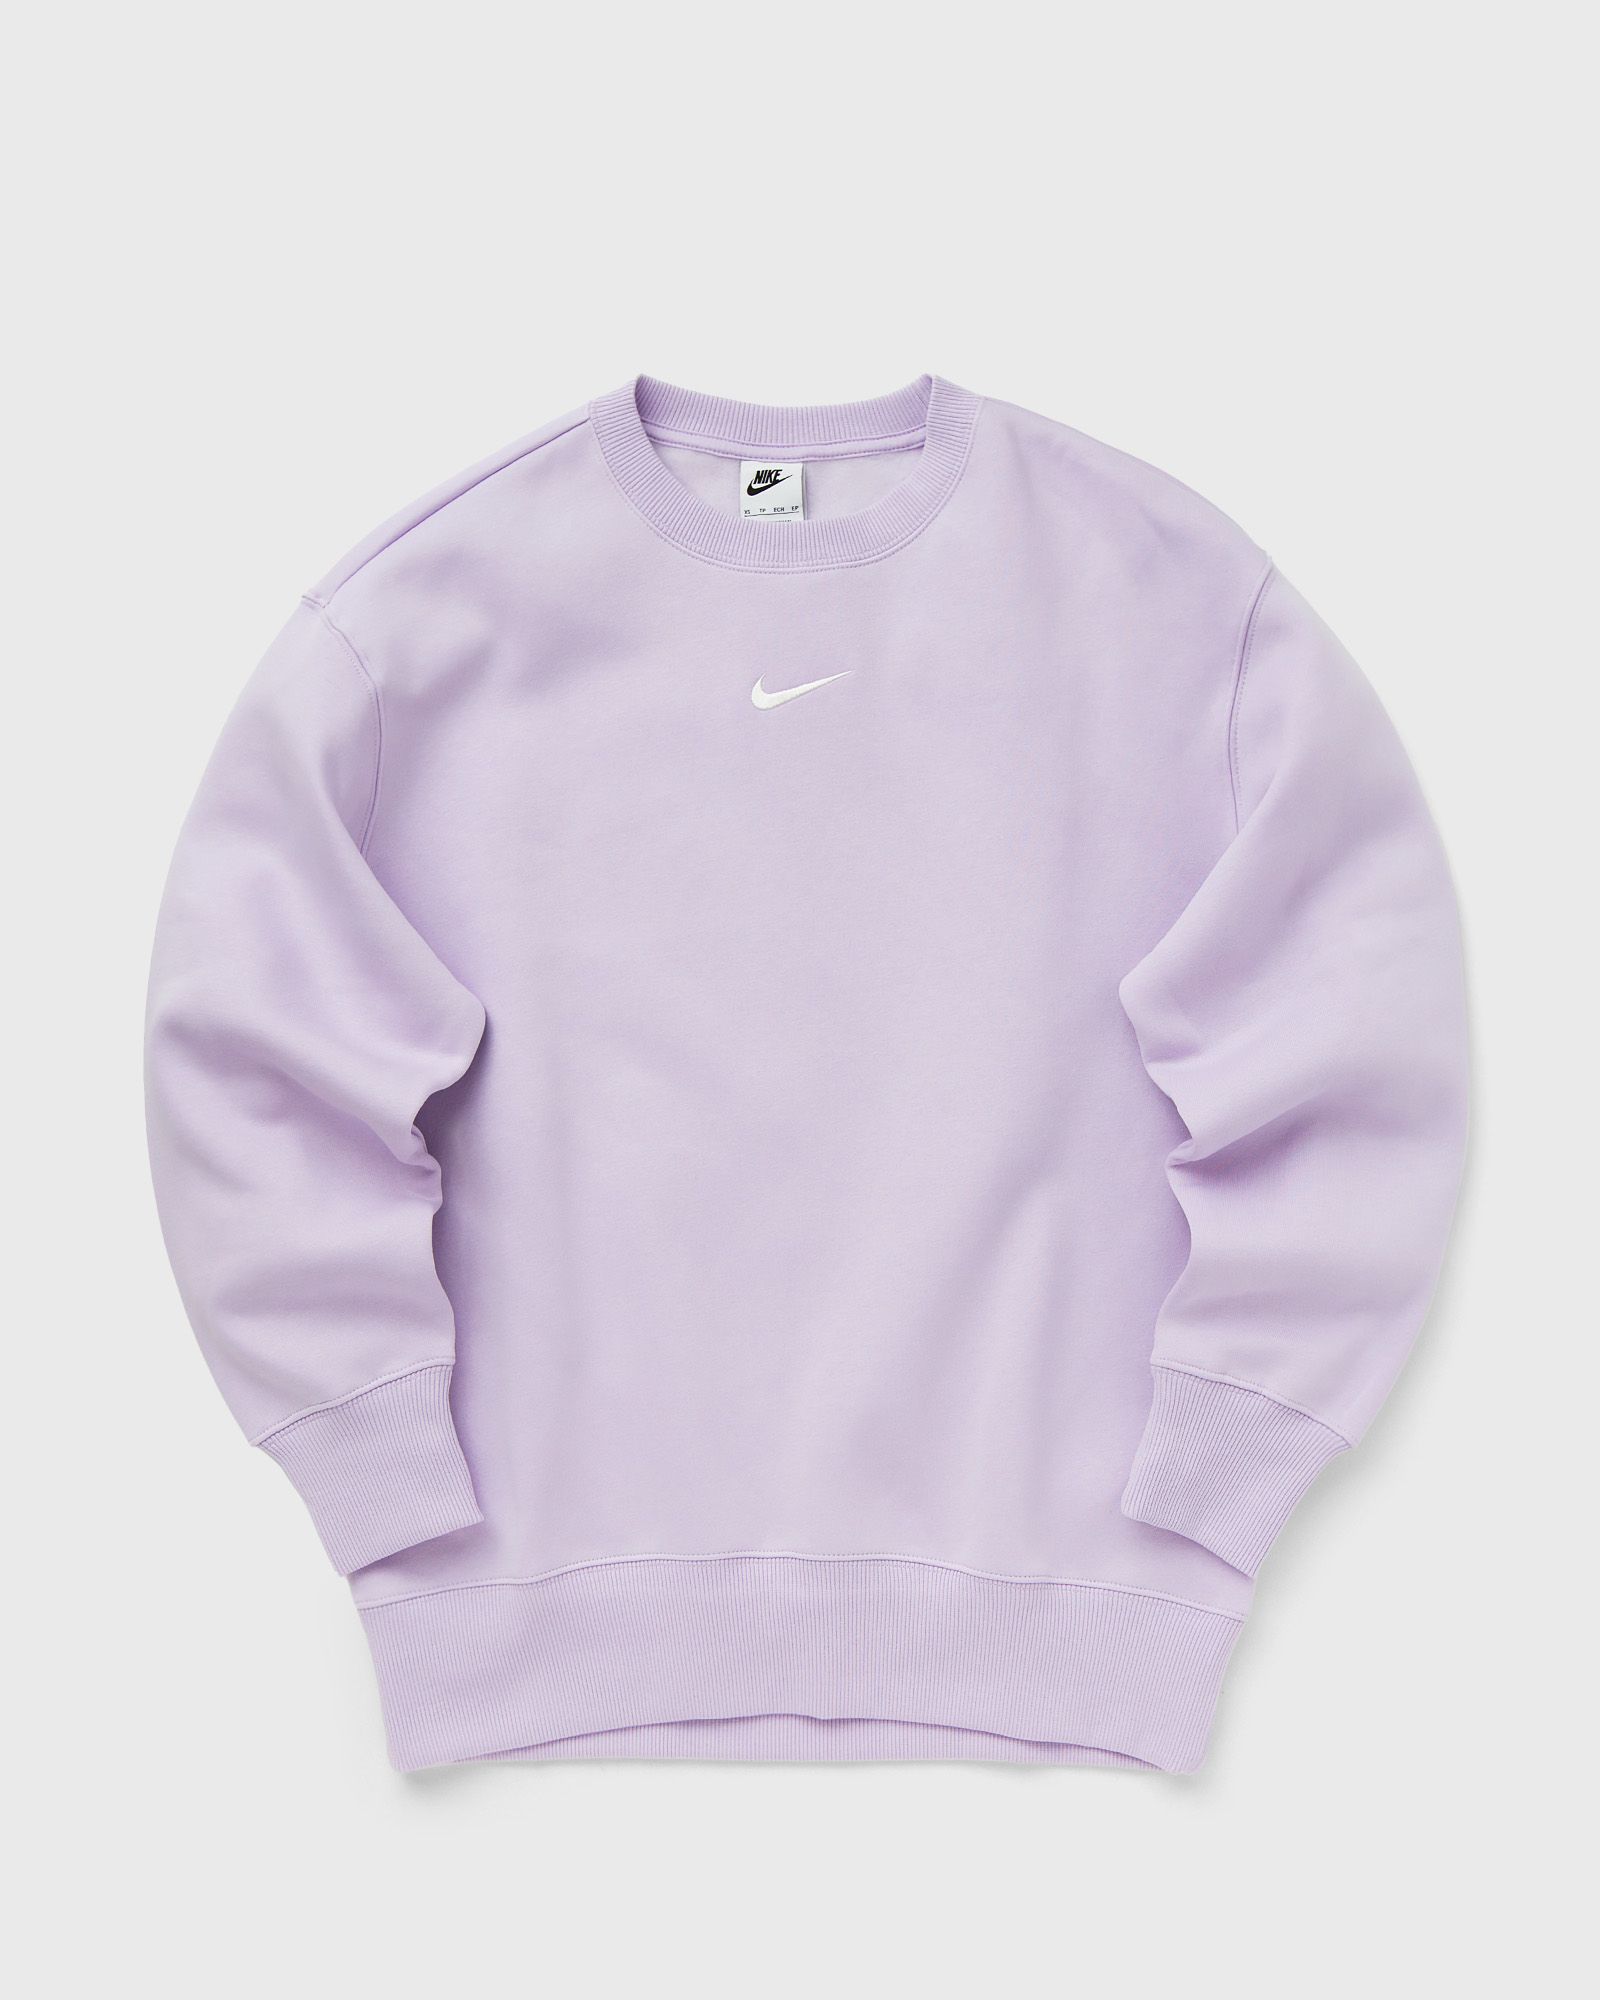 Nike - wmns phoenix fleece oversized crew-neck sweatshirt women sweatshirts purple in größe:l